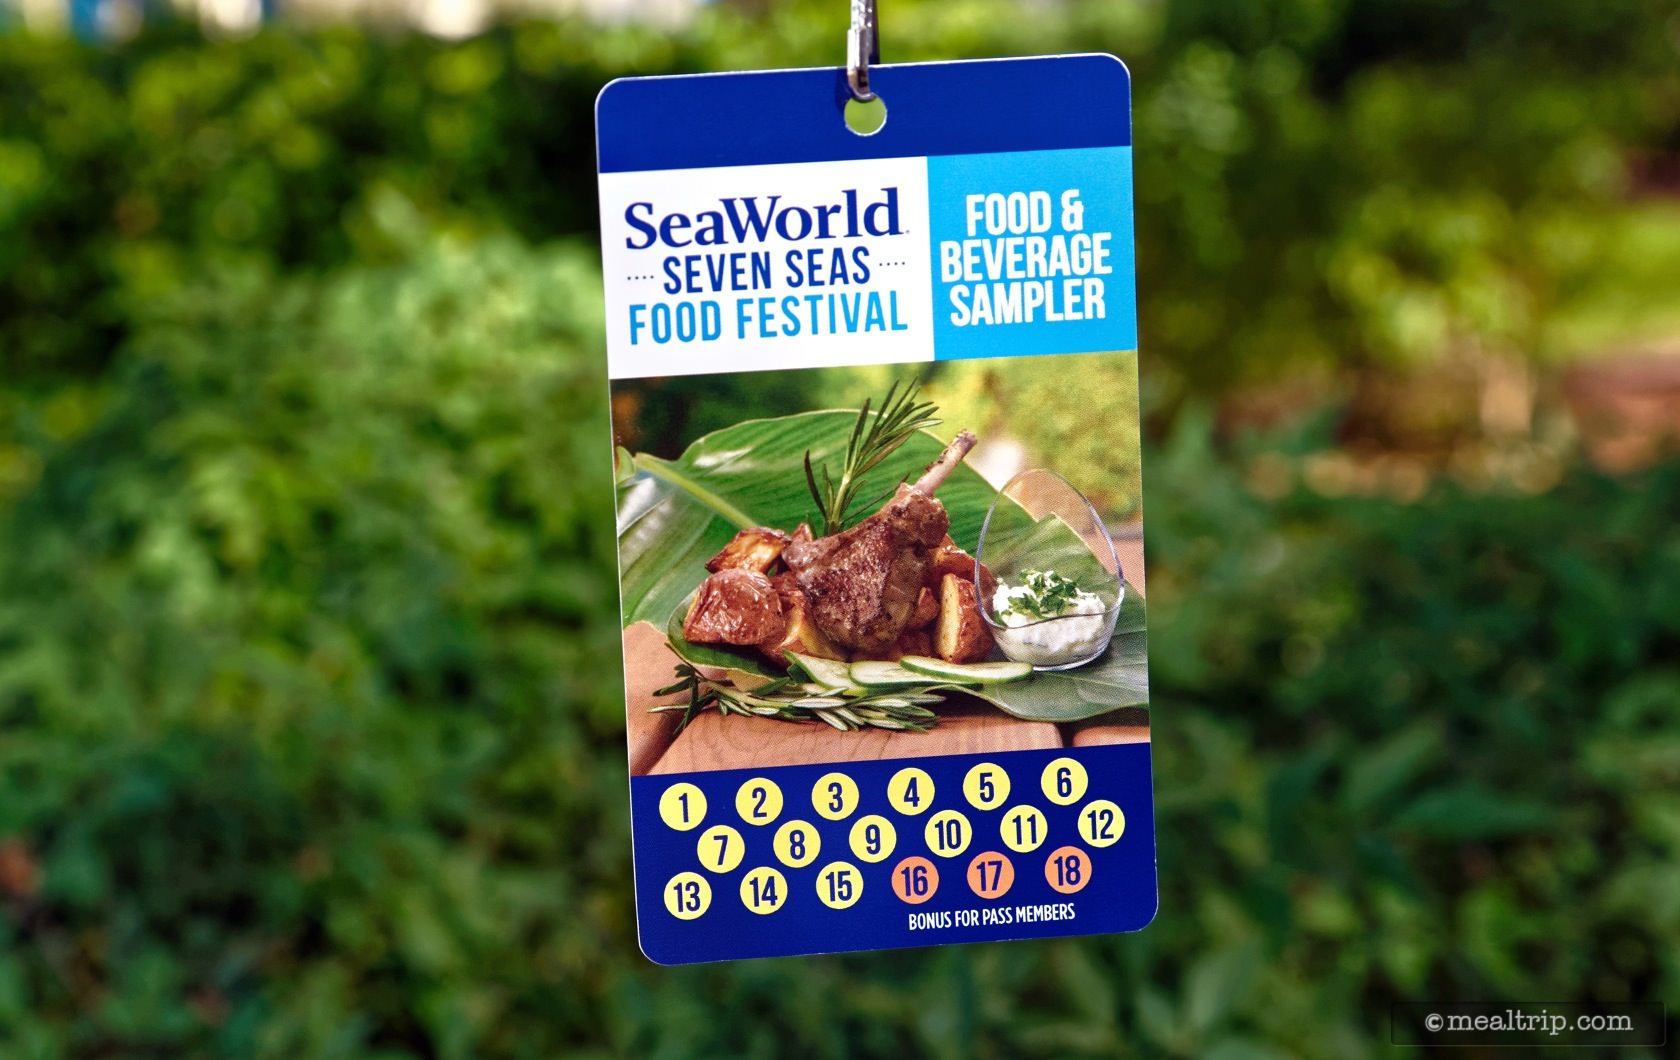 Seven Seas Food Festival Sampler Lanyard For Annual Passholders